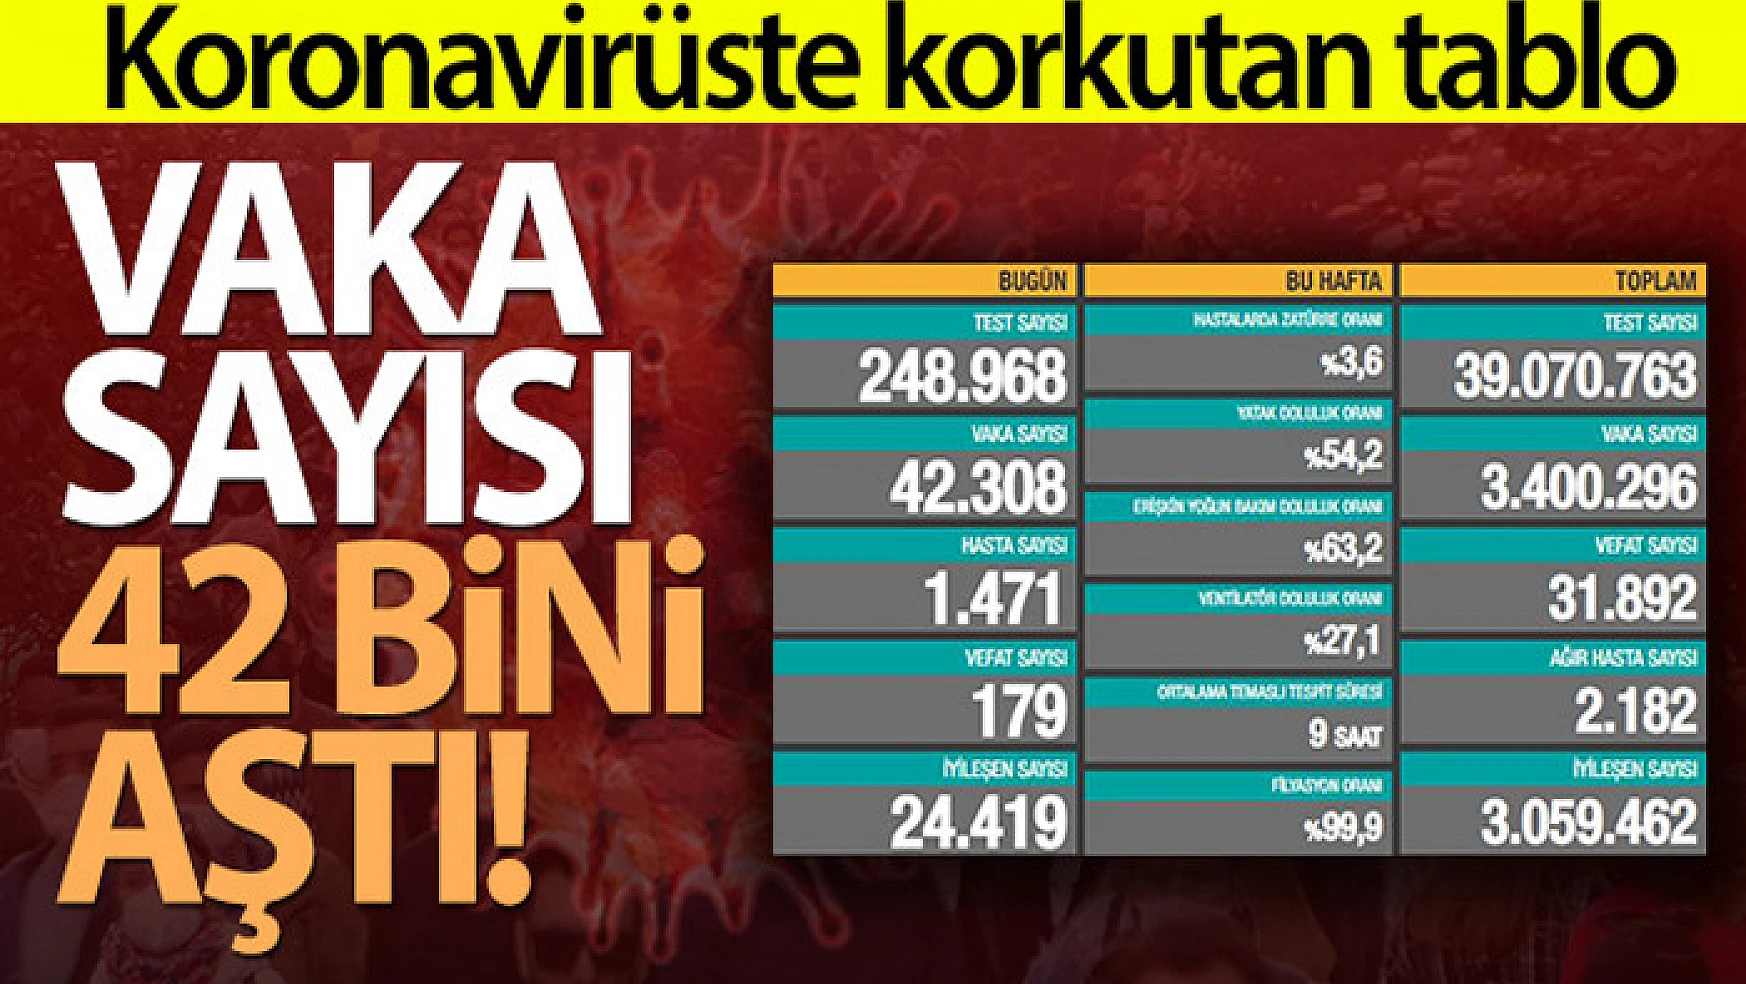 Türkiye'de son 24 saatte 42.308 koronavirüs vakası tespit edildi